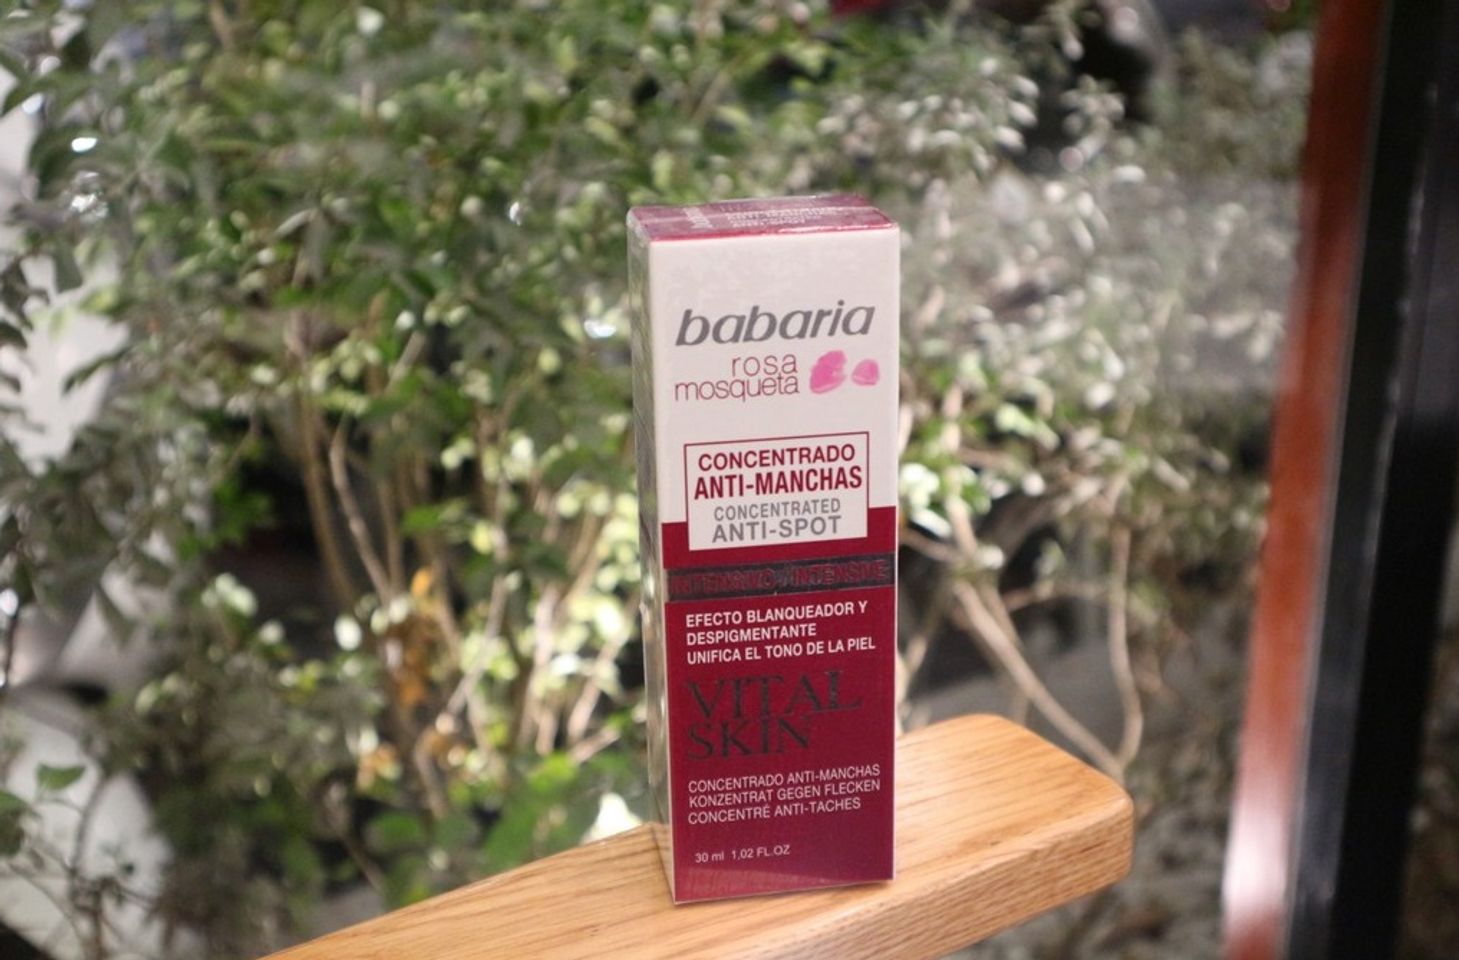 Kem trị nám Babaria Vital Skin chăm sóc da hiệu quả, giảm nám nhanh